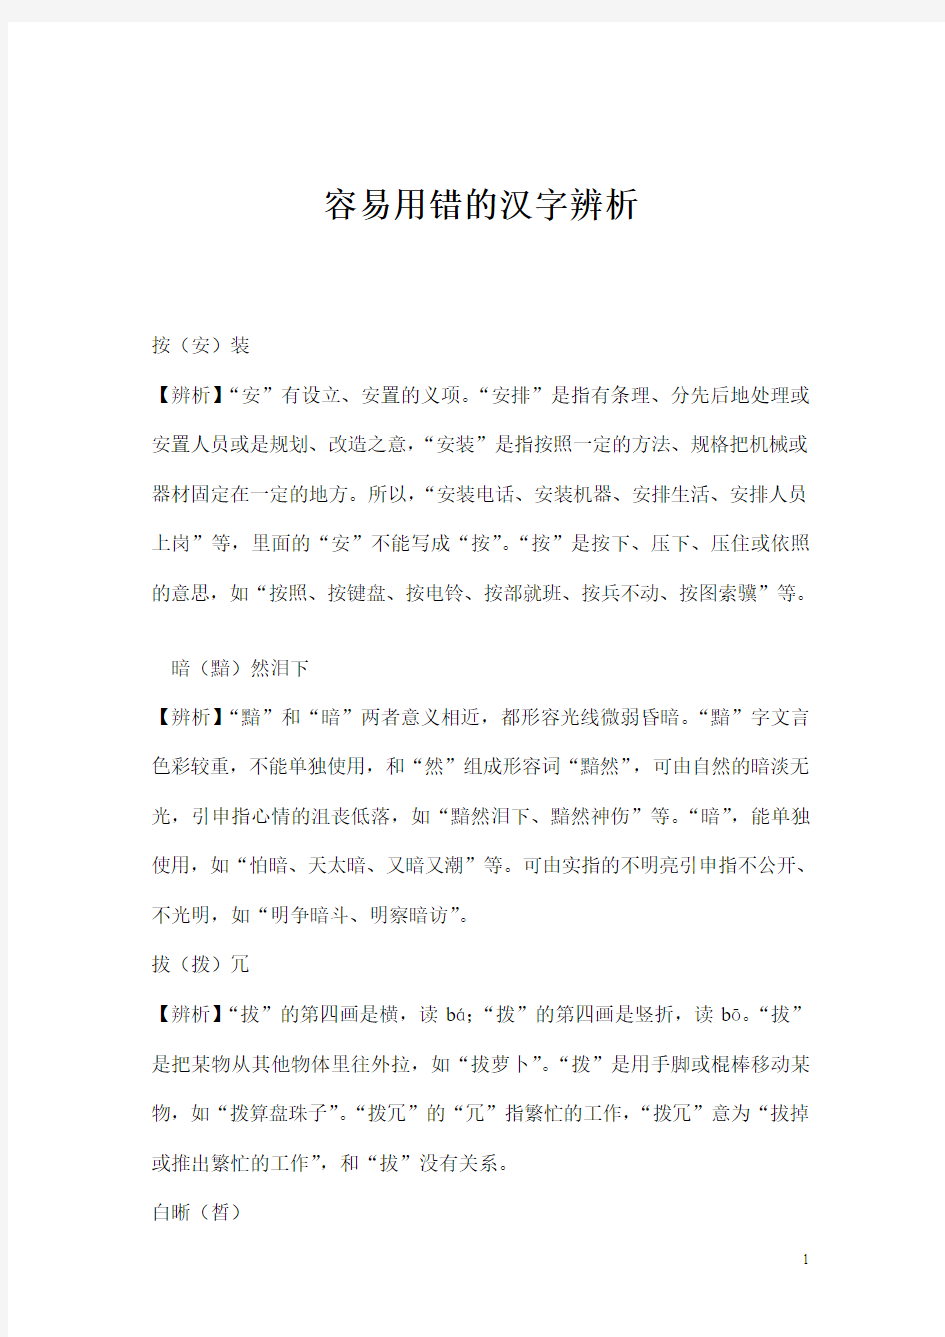 二、容易读错的汉字例辨 - 上海建桥学院Shanghai Jianqiao